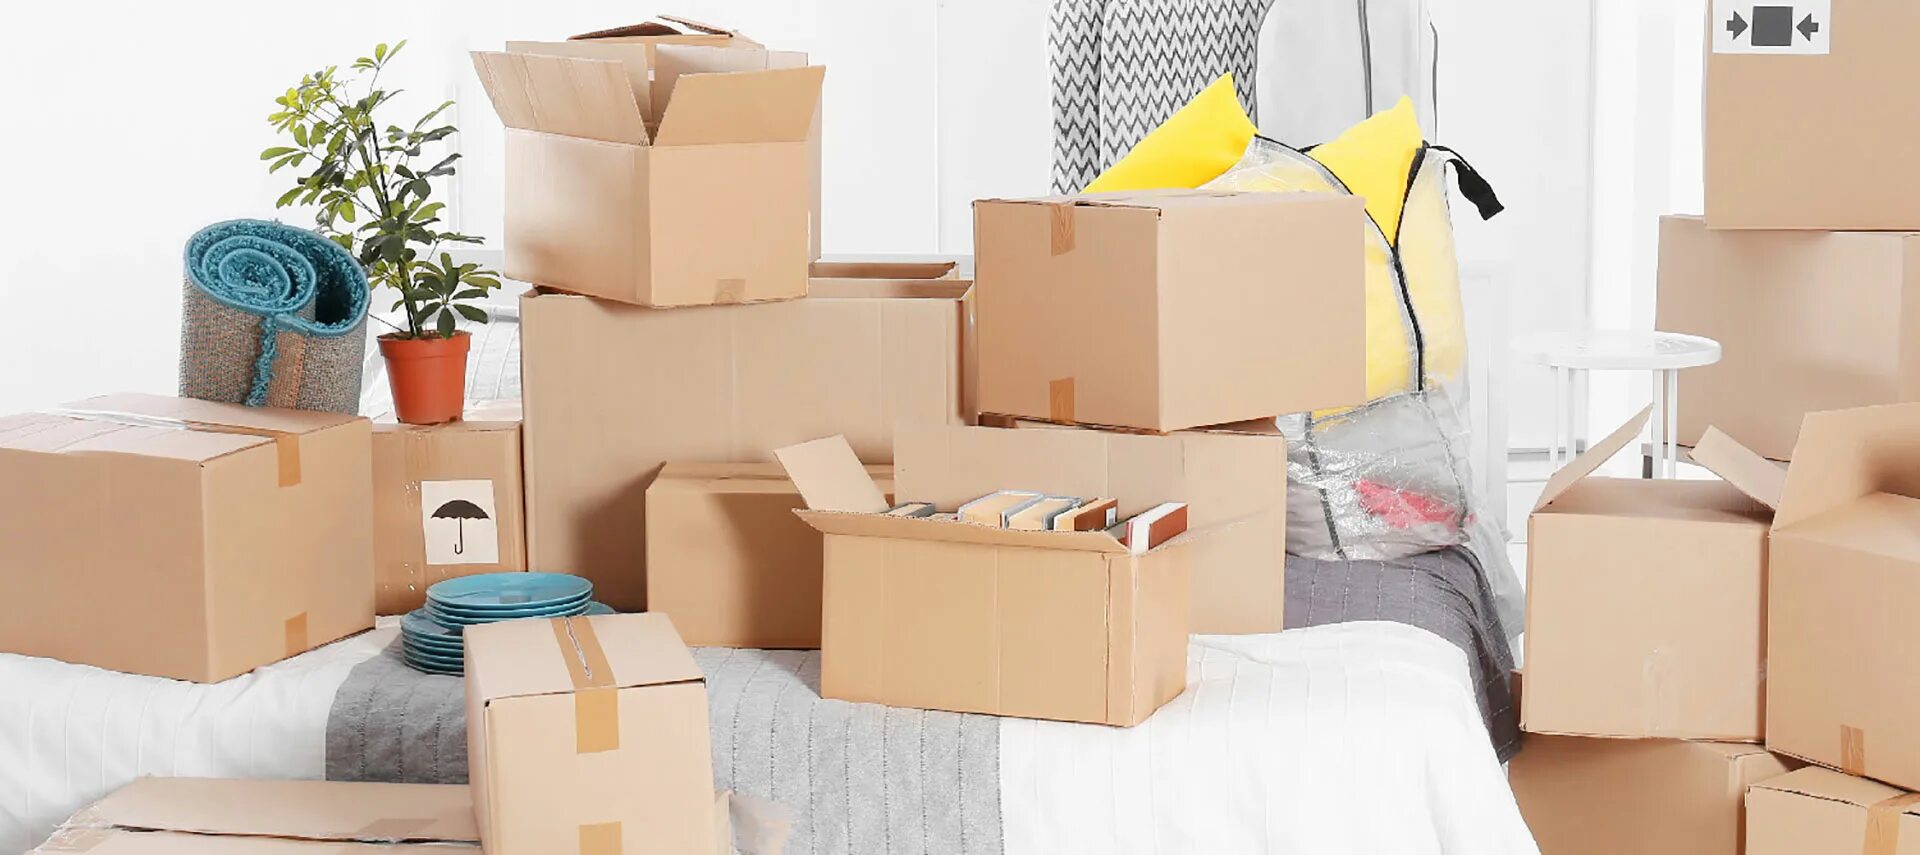 Дешево переехать. Переезд вещи. Коробки в квартире. Комната с коробками. Коробки с вещами.